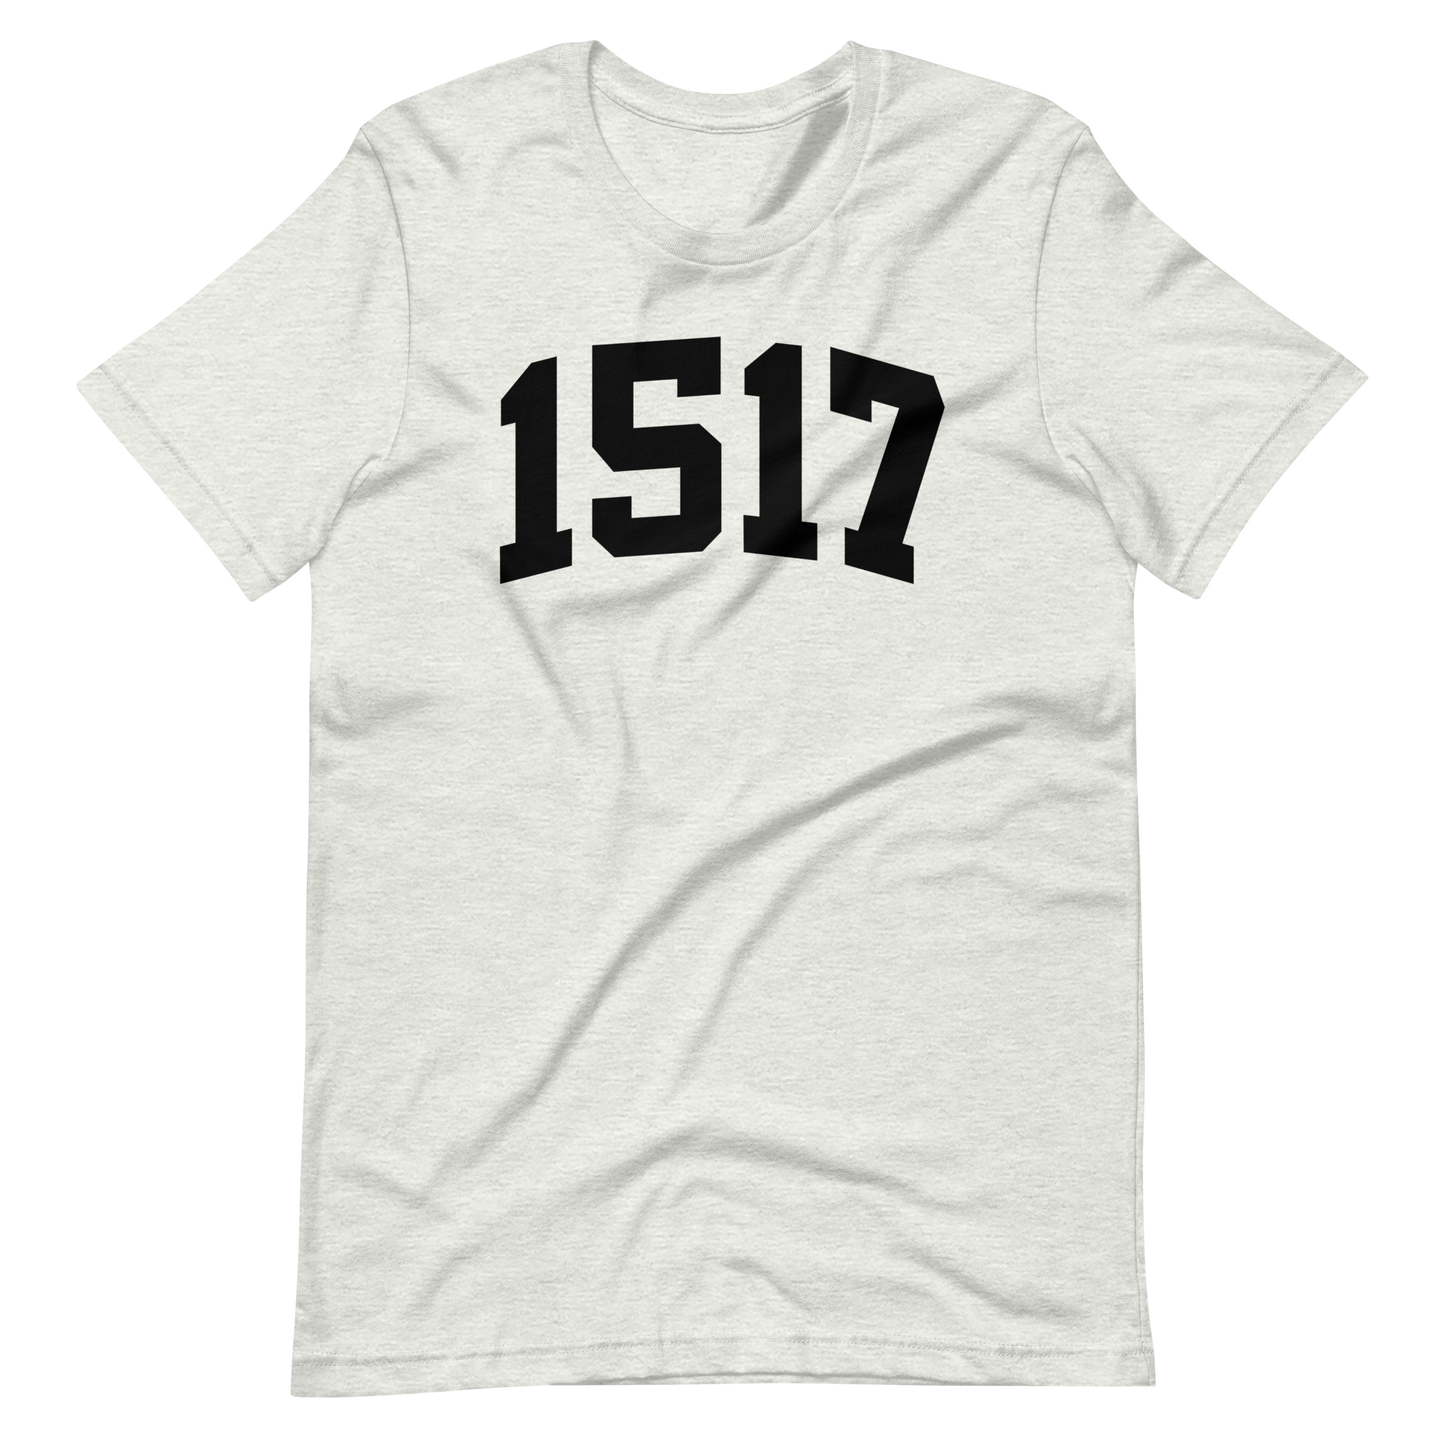 1517 T-Shirt